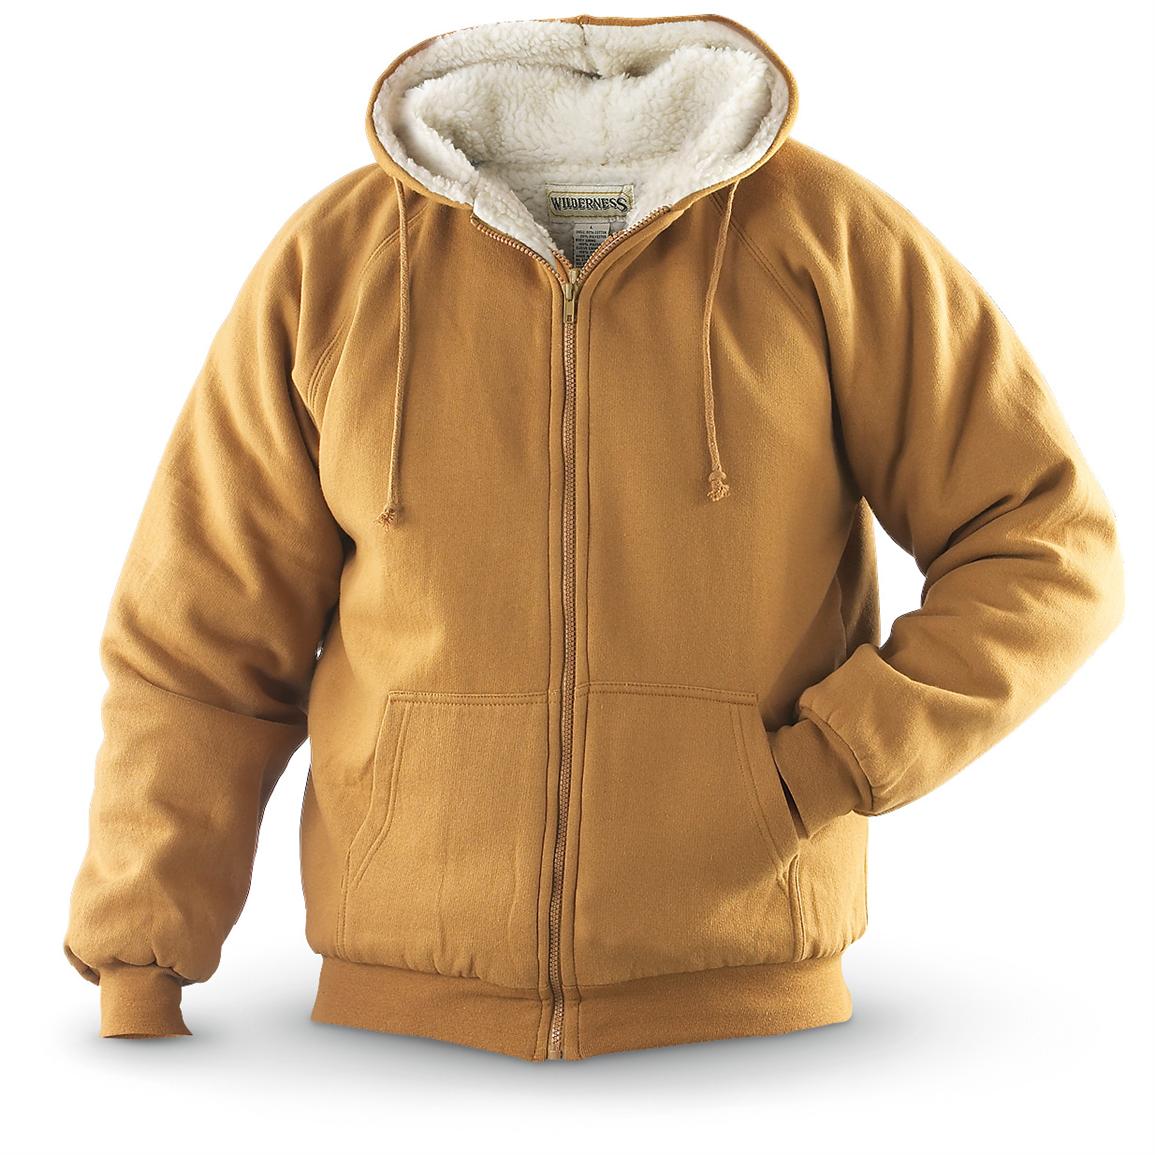 Wilderness Sherpa - lined Fleece Zip Hoodie - 155157, Sweatshirts ...